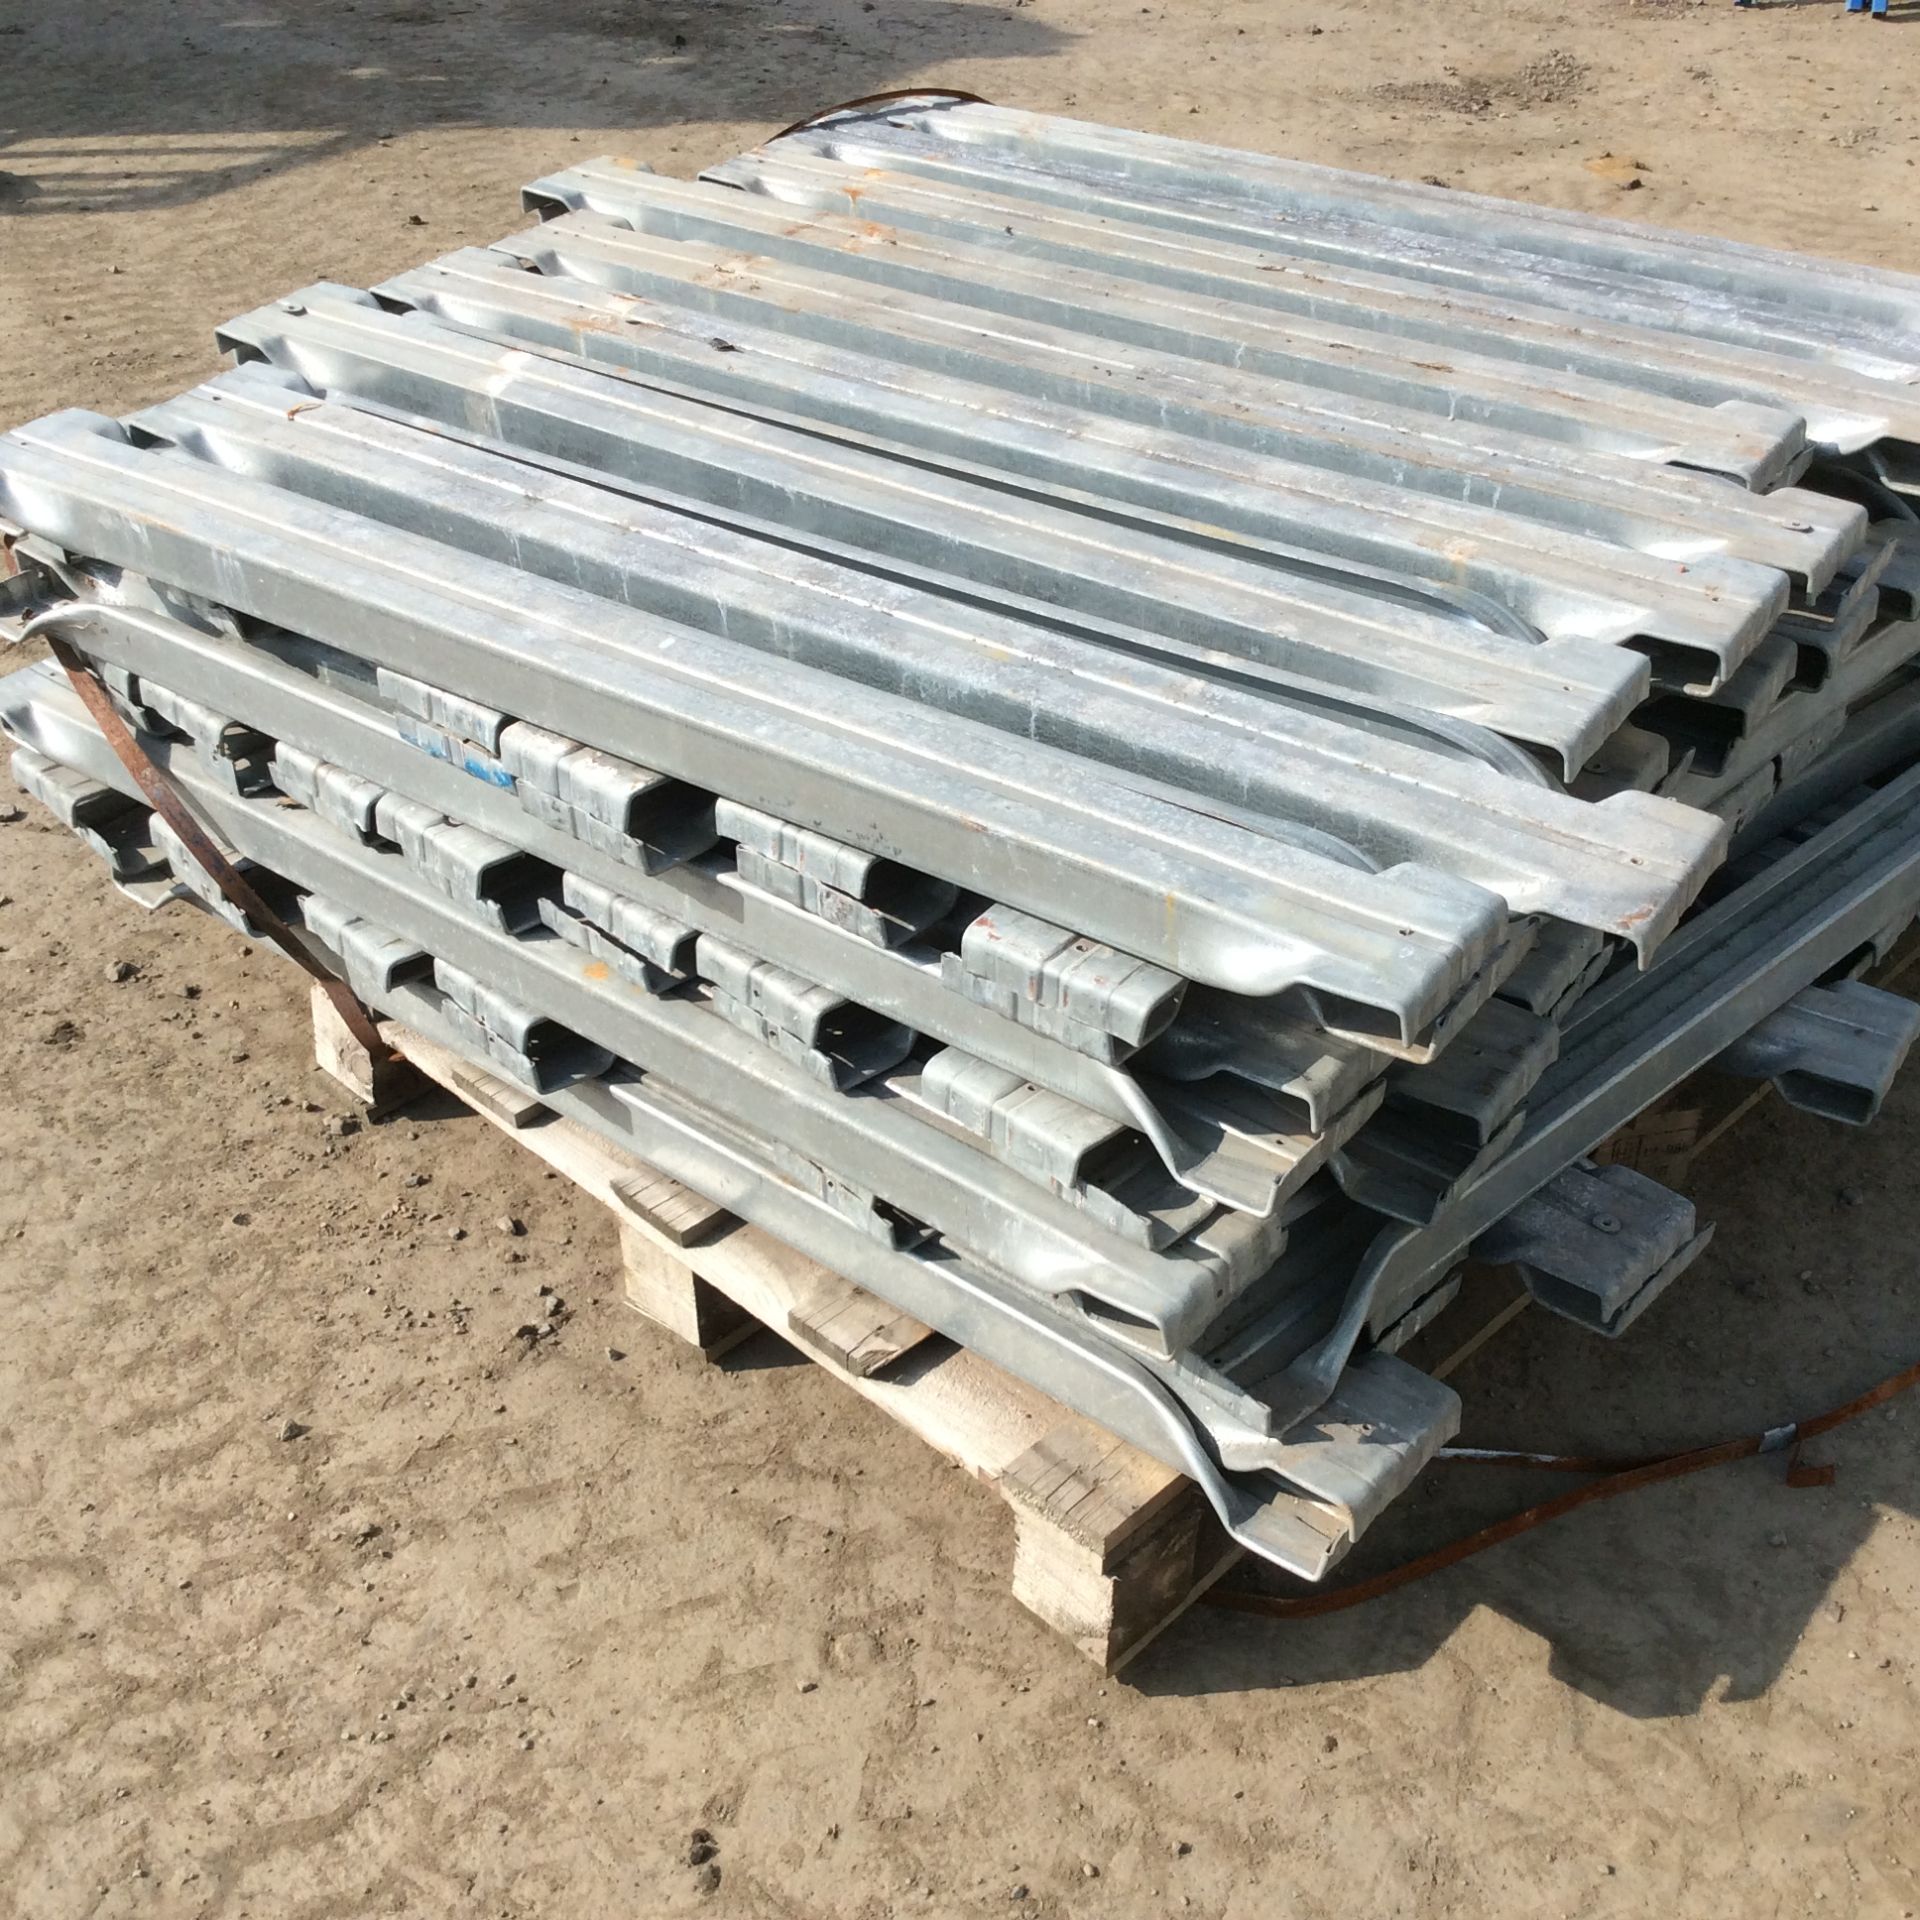 x 98 Gavanised Steel Decking For Pallet Racking - 111cm Width.